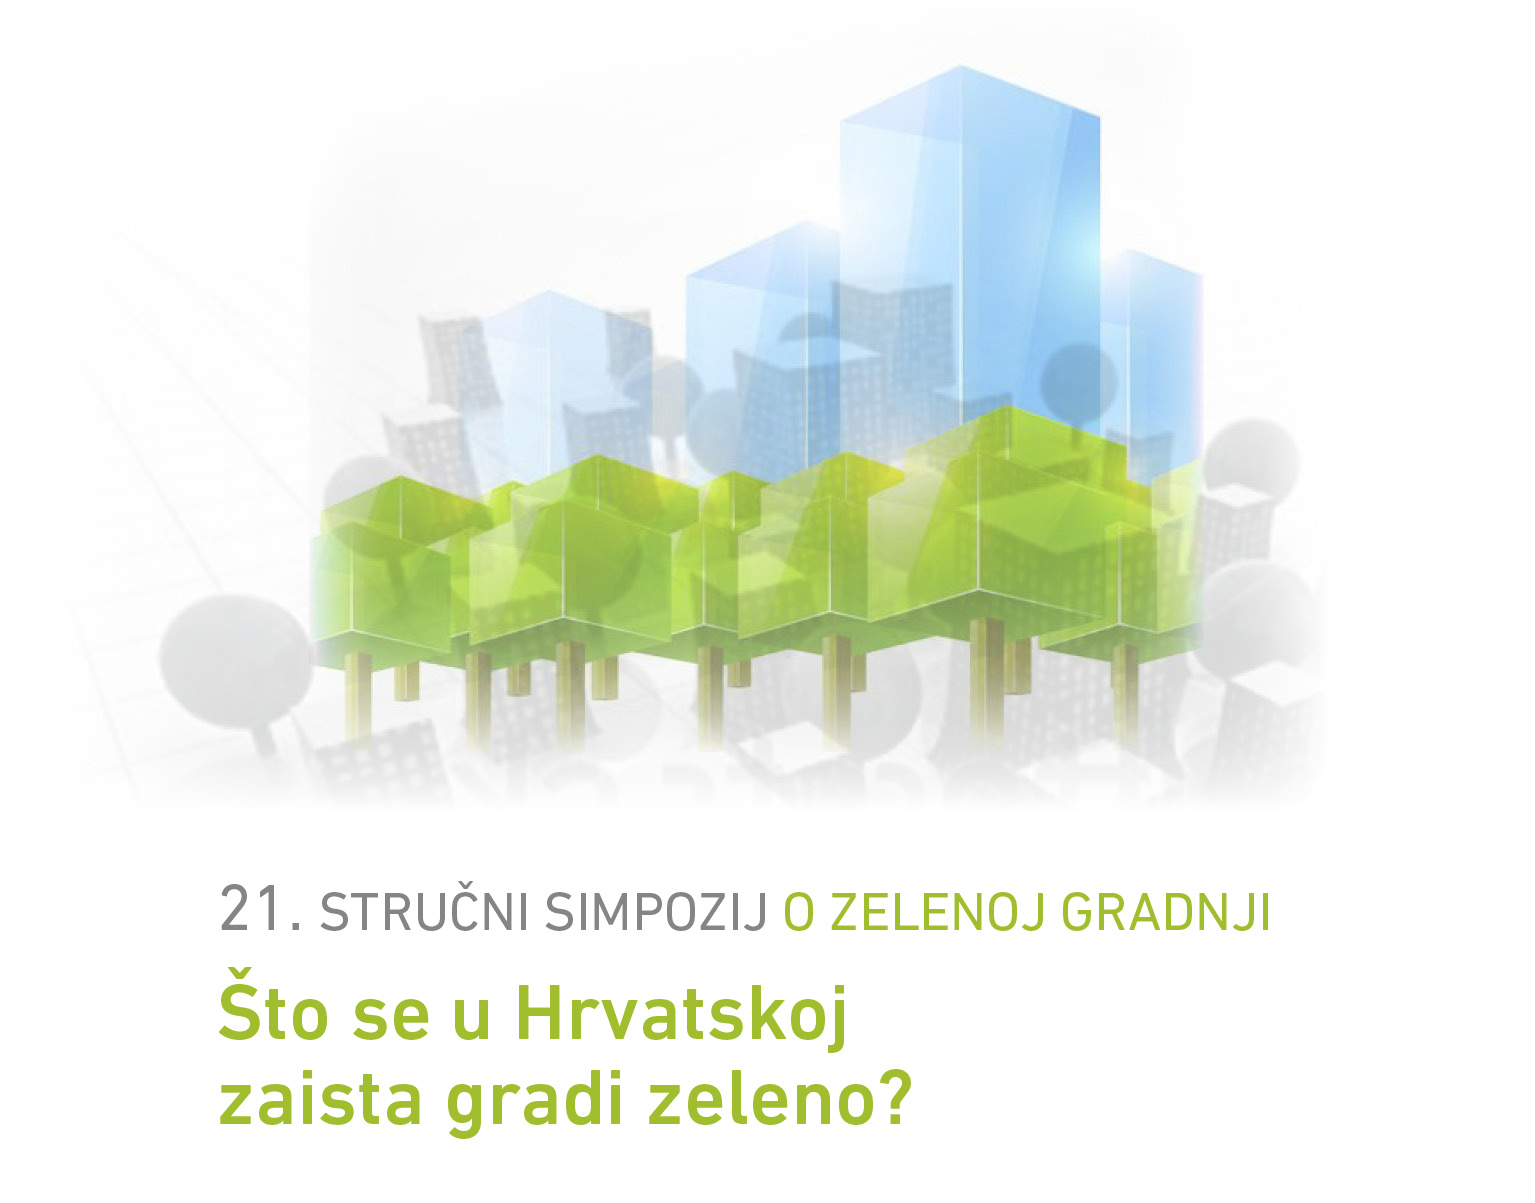 21. stručni simpozij o zelenoj gradnji: “Što se u Hrvatskoj zaista gradi zeleno?”